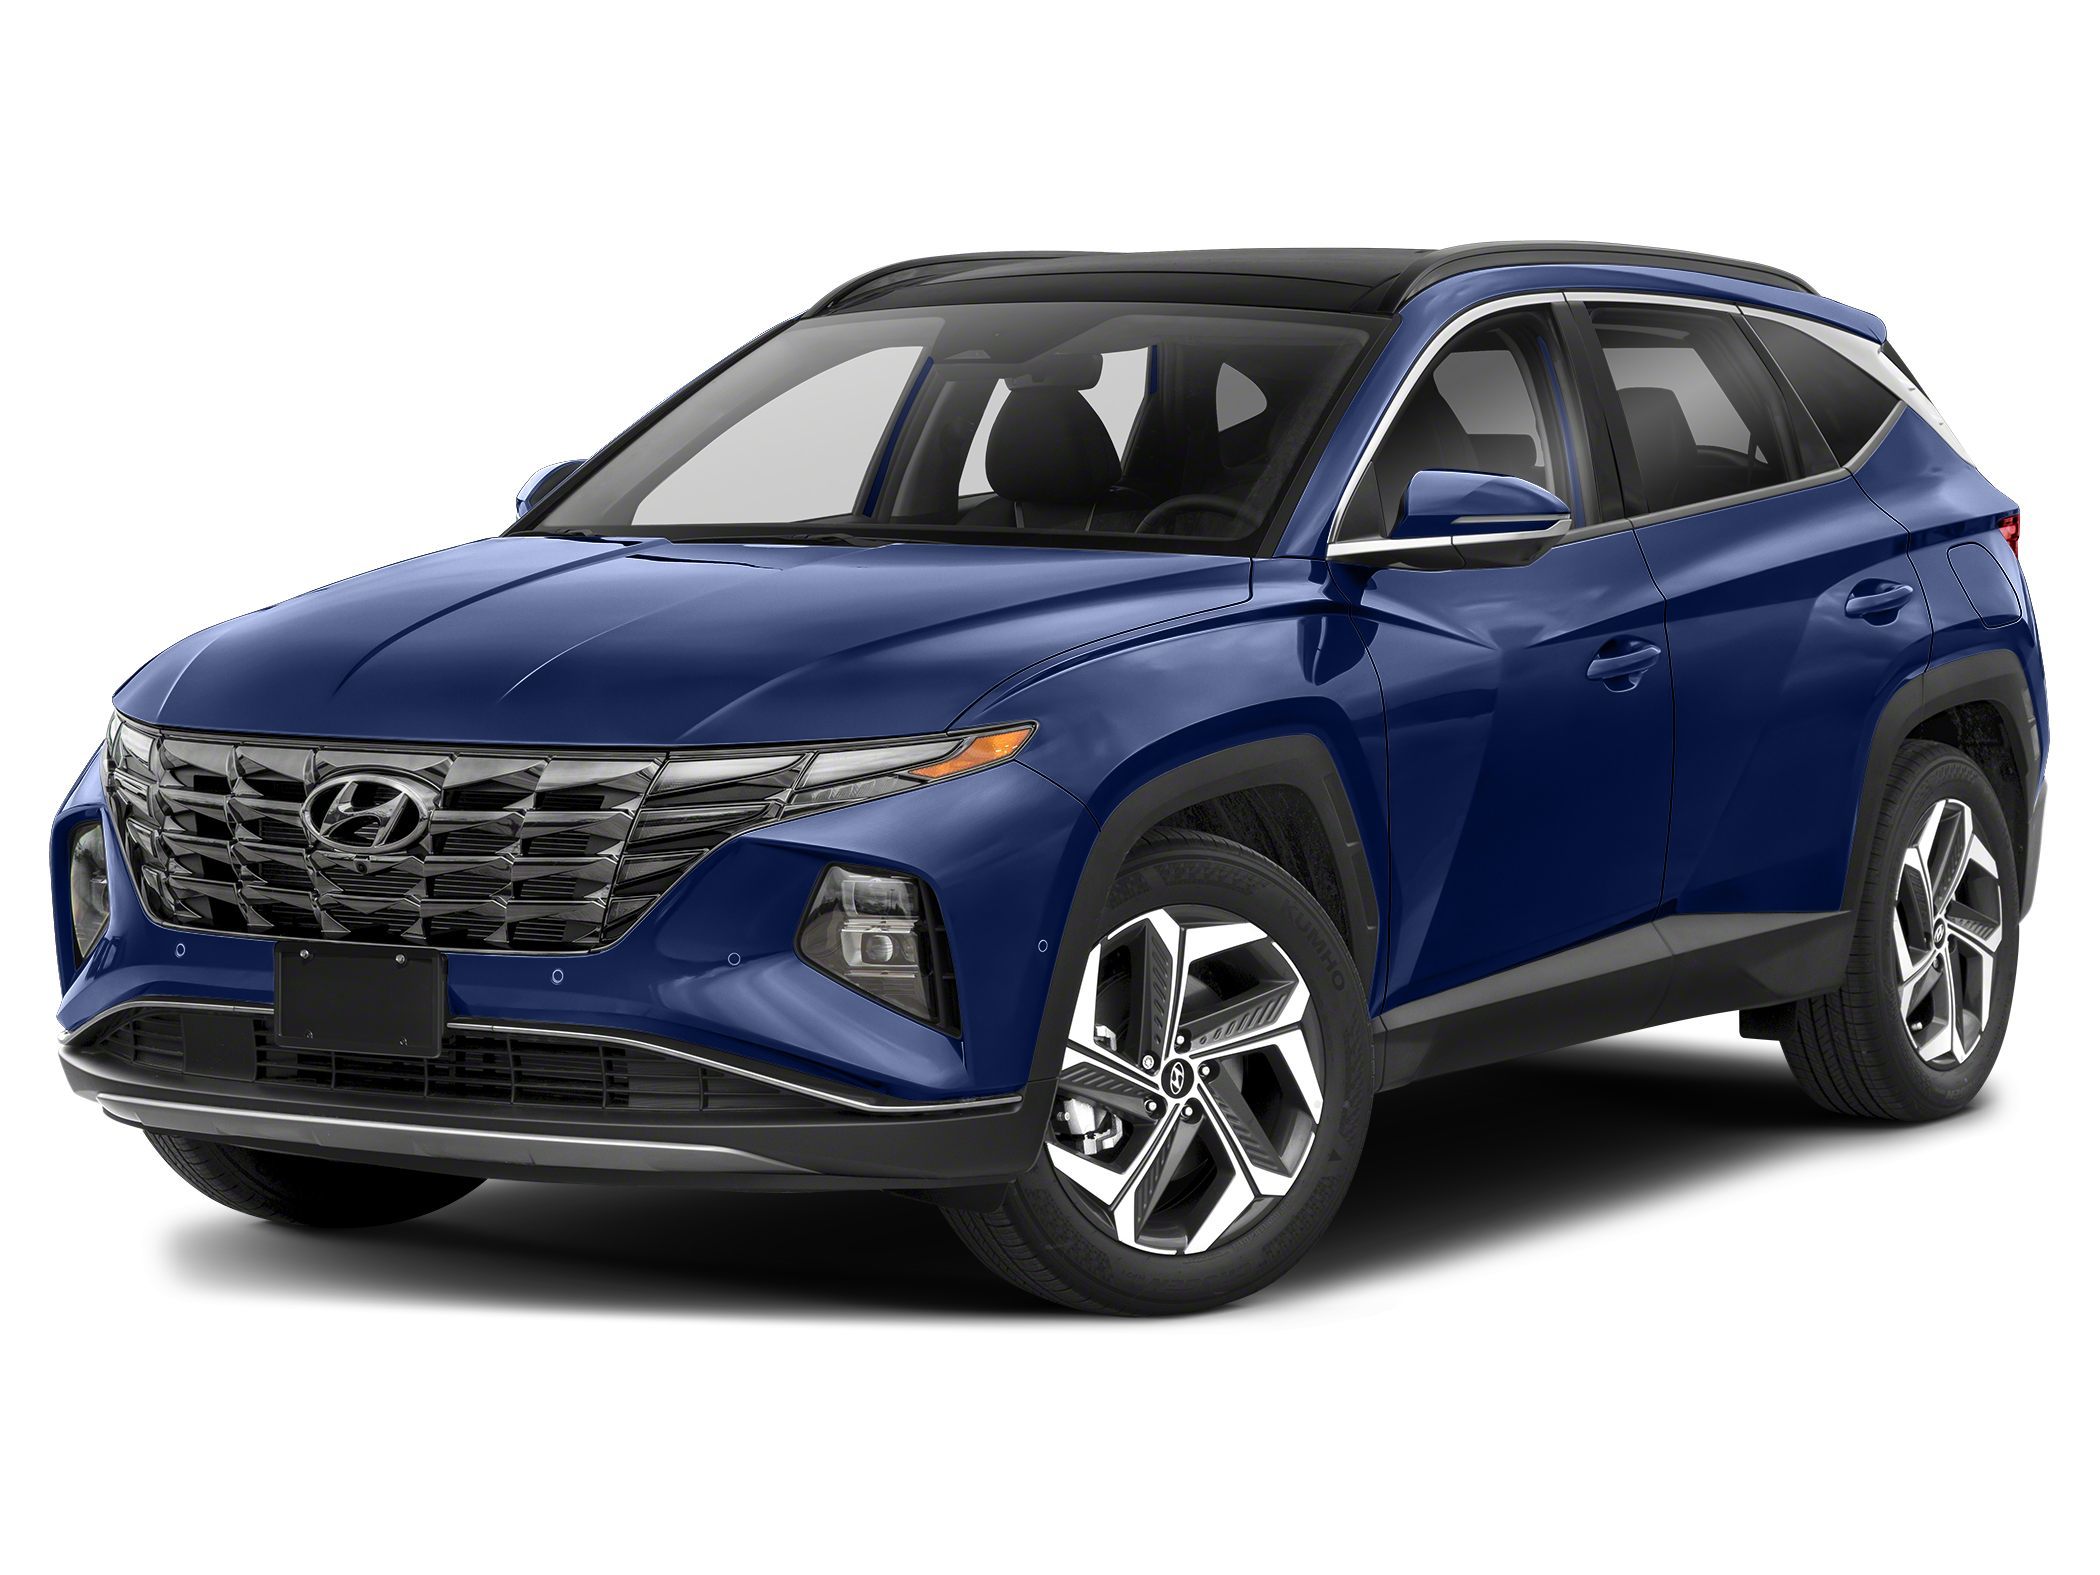 2023 Hyundai Tucson SUV 